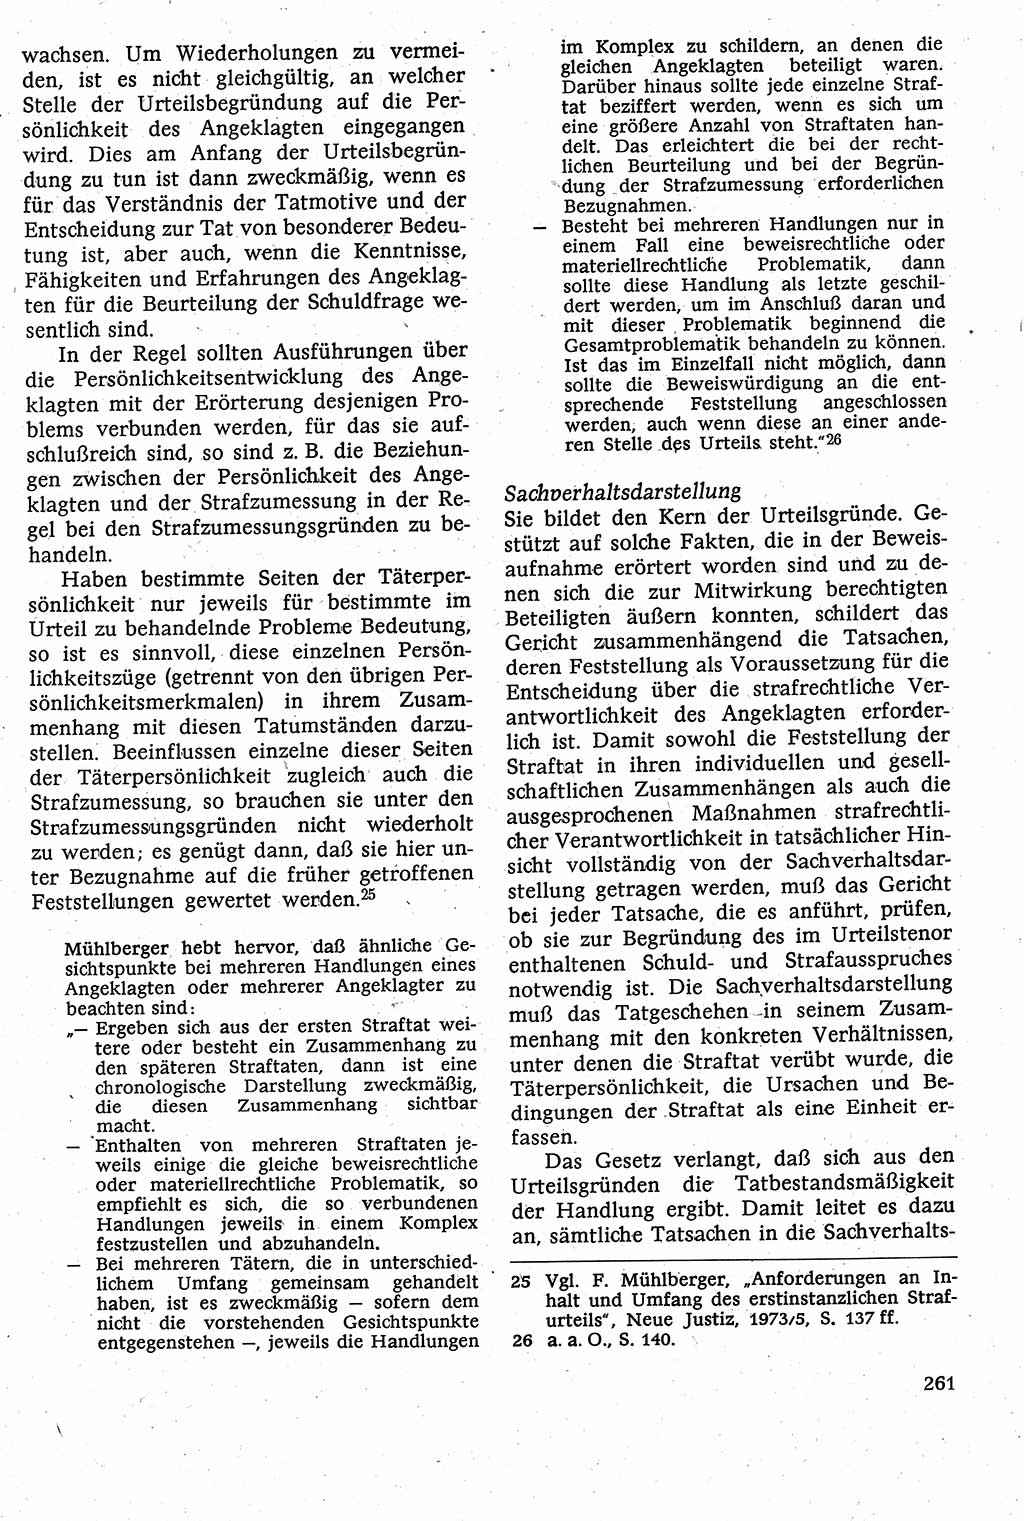 Strafverfahrensrecht [Deutsche Demokratische Republik (DDR)], Lehrbuch 1982, Seite 261 (Strafverf.-R. DDR Lb. 1982, S. 261)